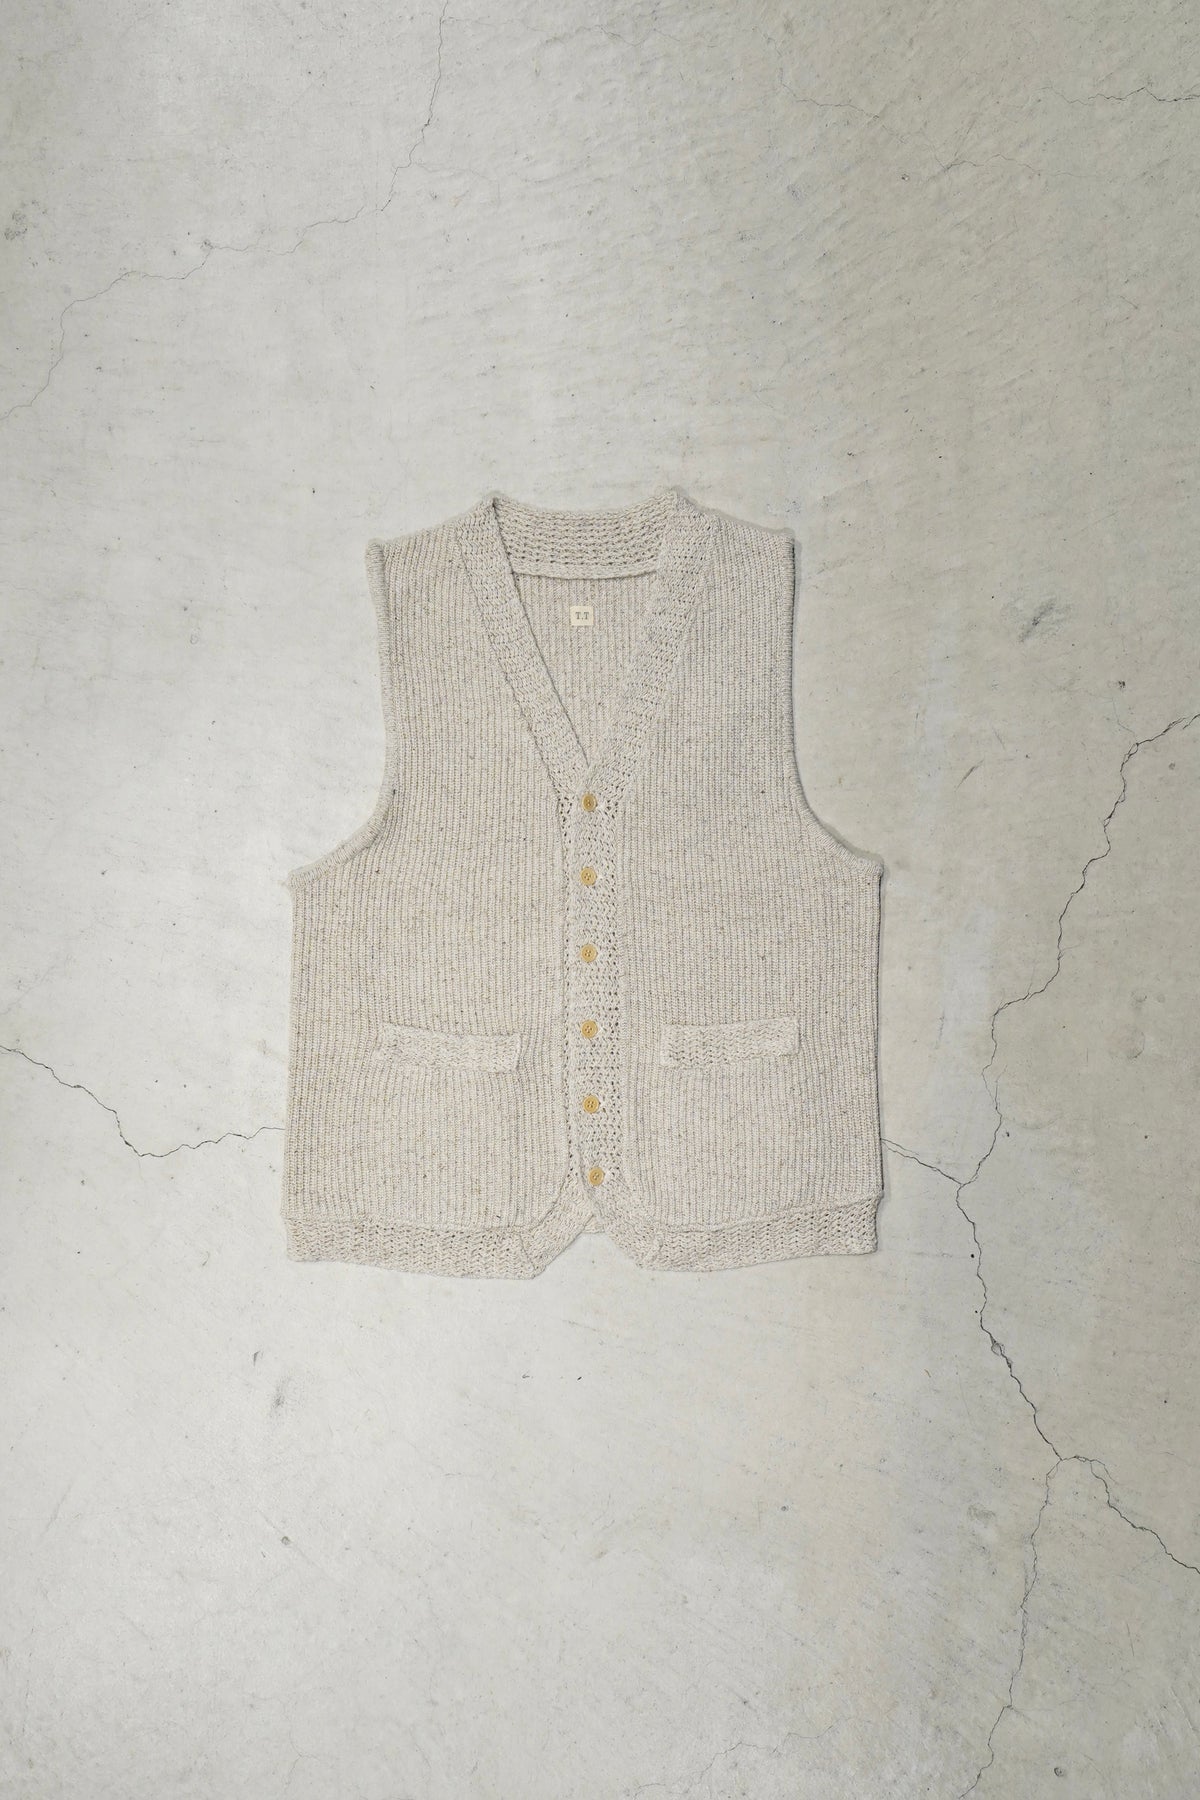 アニメショート 早い者勝ちtaiga takahashi knitted vest